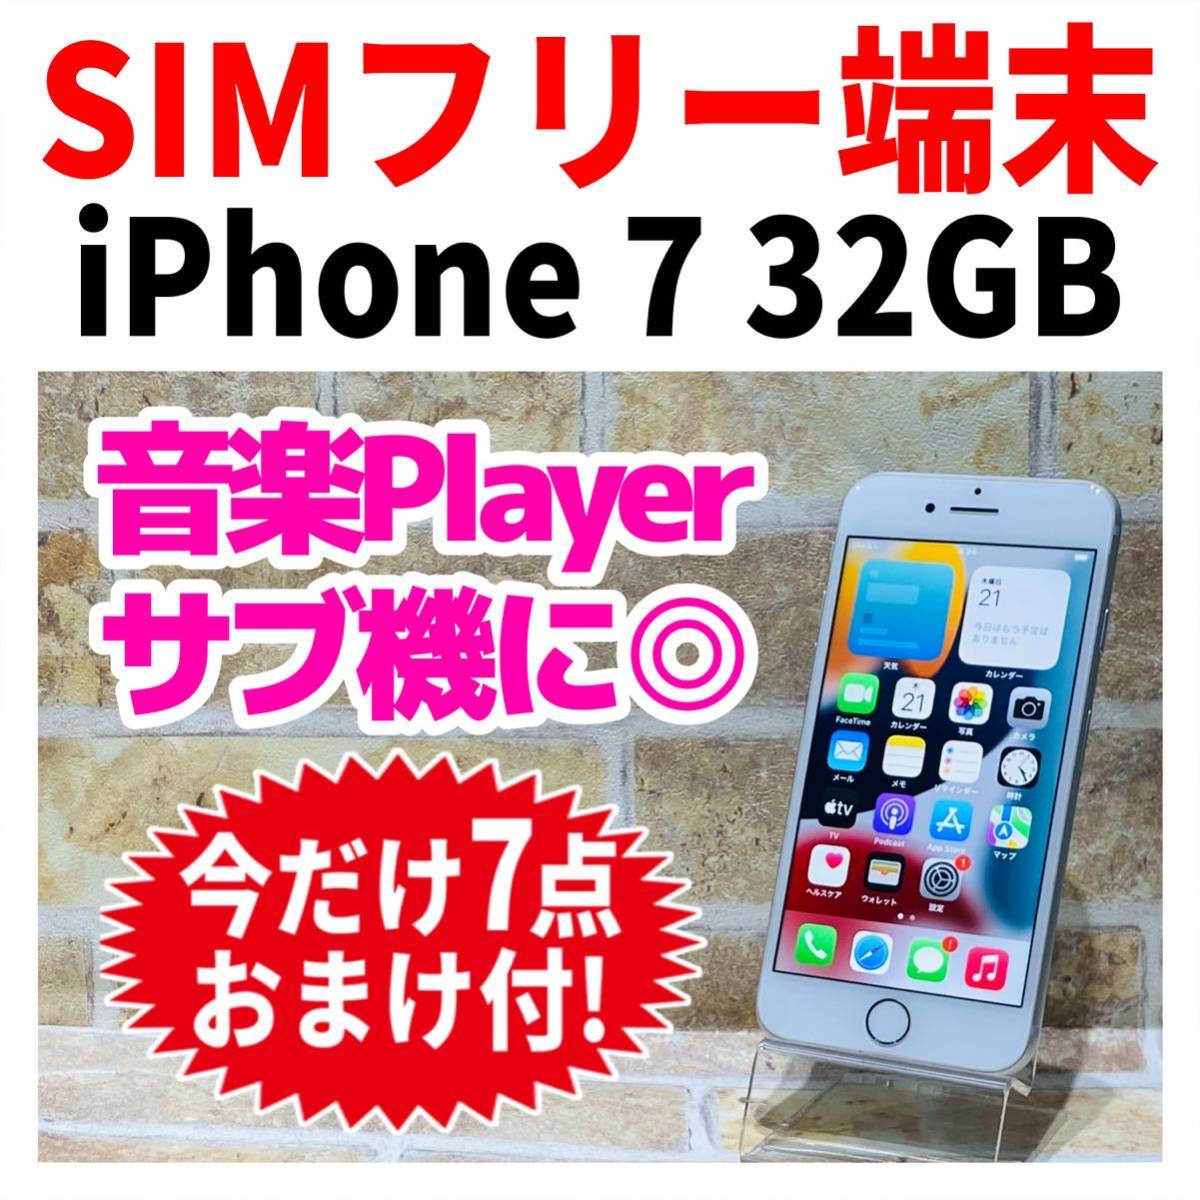 熱い販売 iPhone7 SIMフリー 32GB ケーブルセット 新品電池 シルバー 027 iPhone